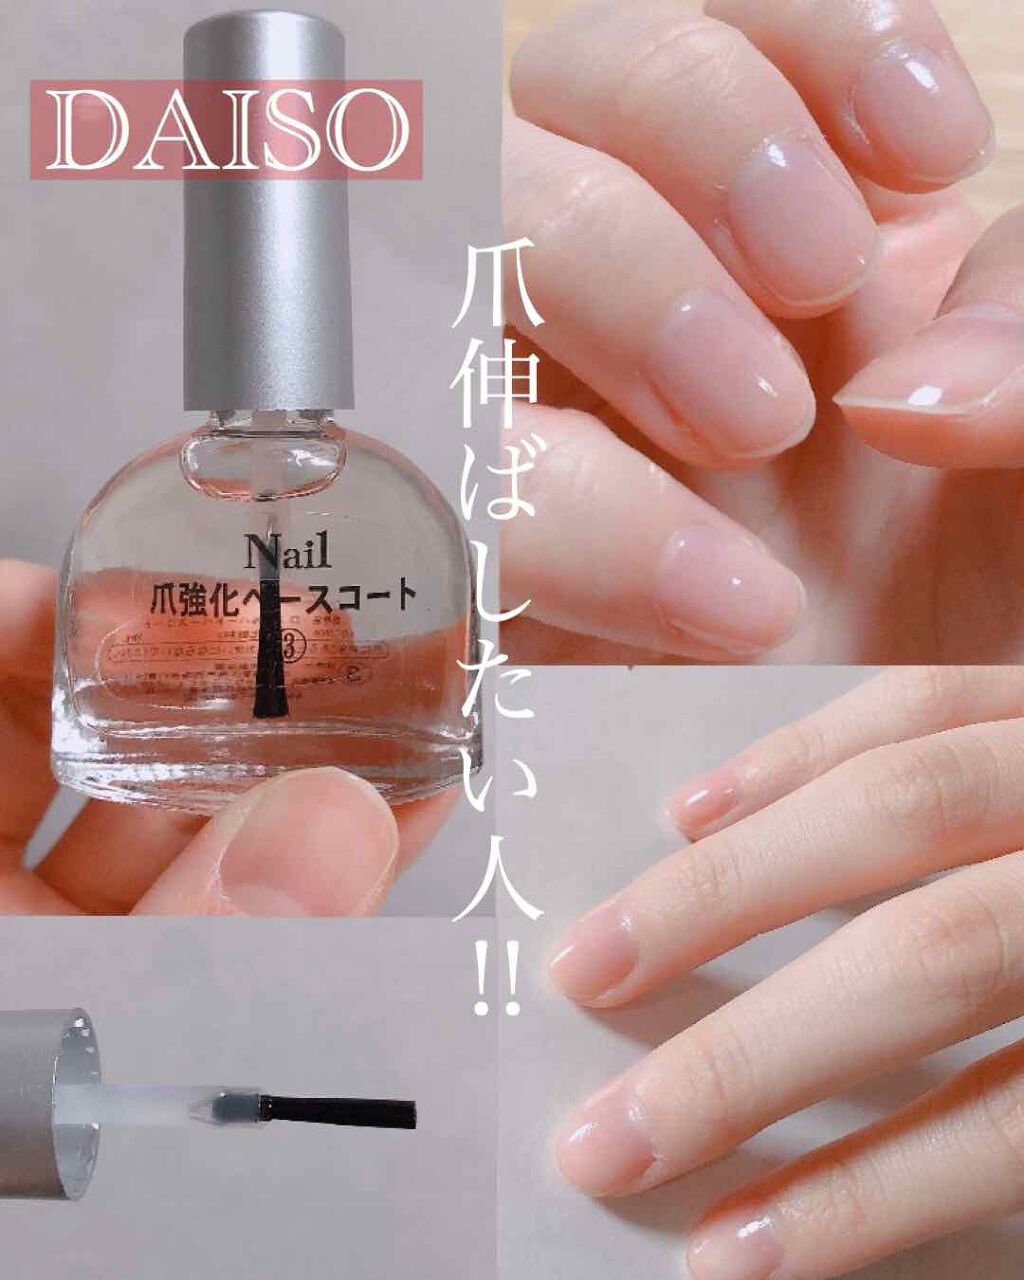 爪強化ベースコート Daisoの口コミ 欠ける 割れる 弱い爪に 塗って補強 By ぷりん 10代後半 Lips